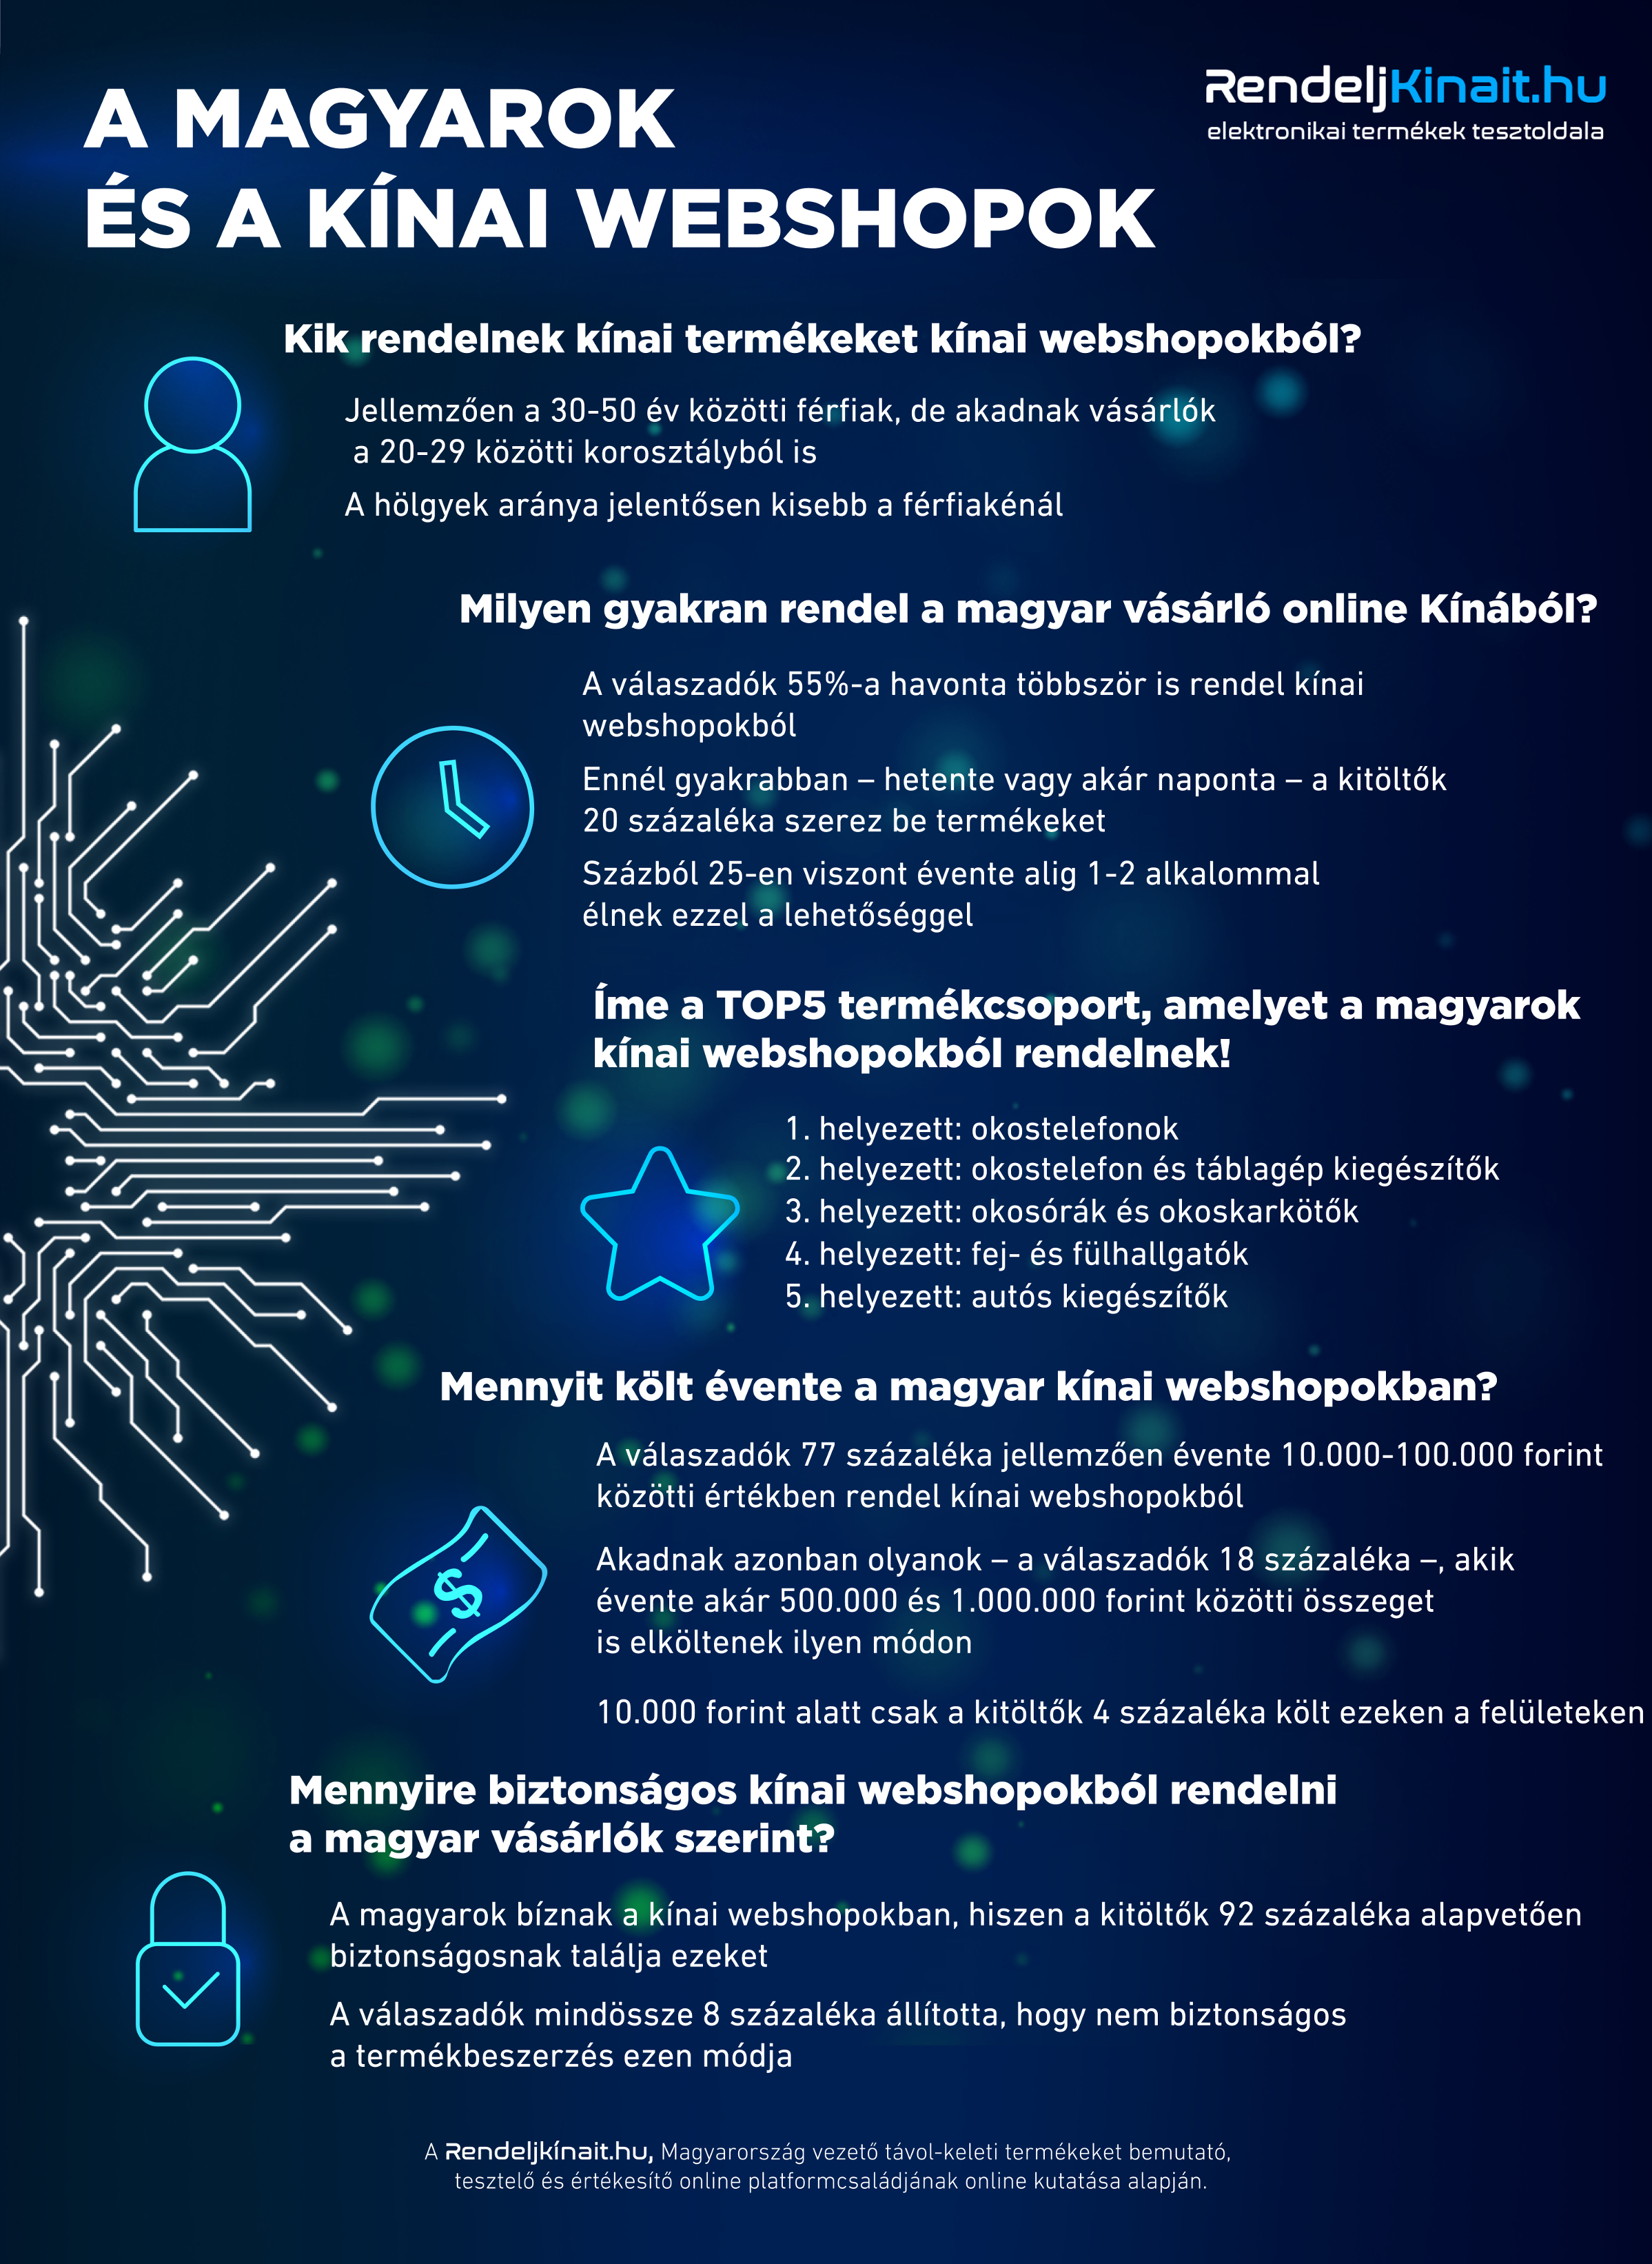 Rendeljkinait_infografika_20180306